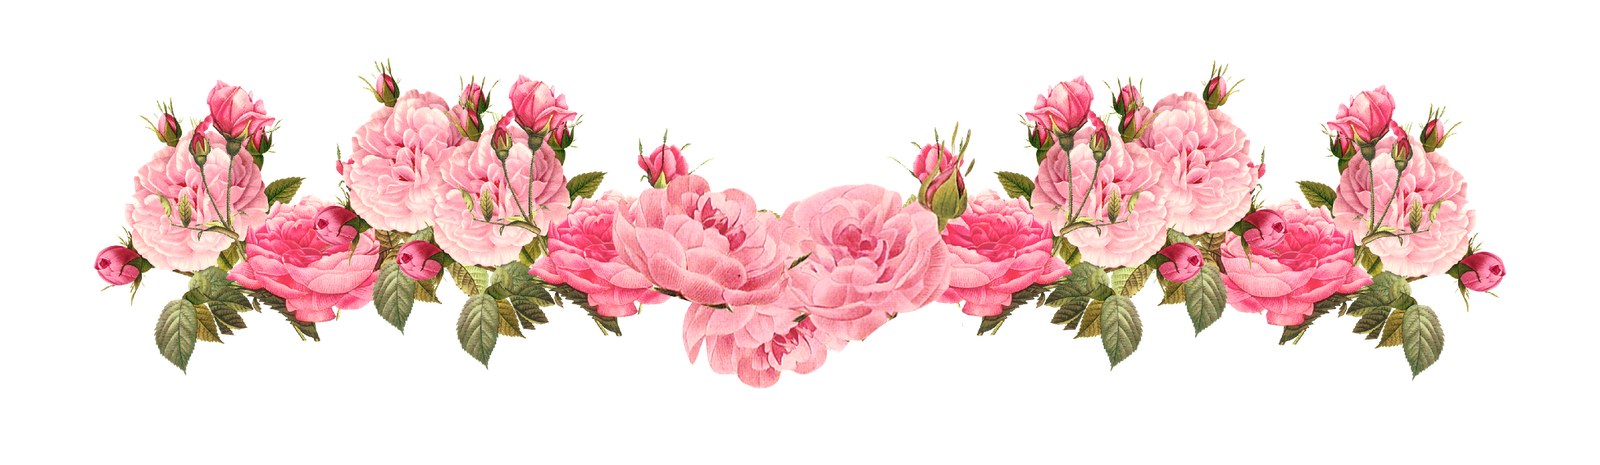 rosentapetenrand,blume,rosa,pflanze,blütenblatt,blühende pflanze